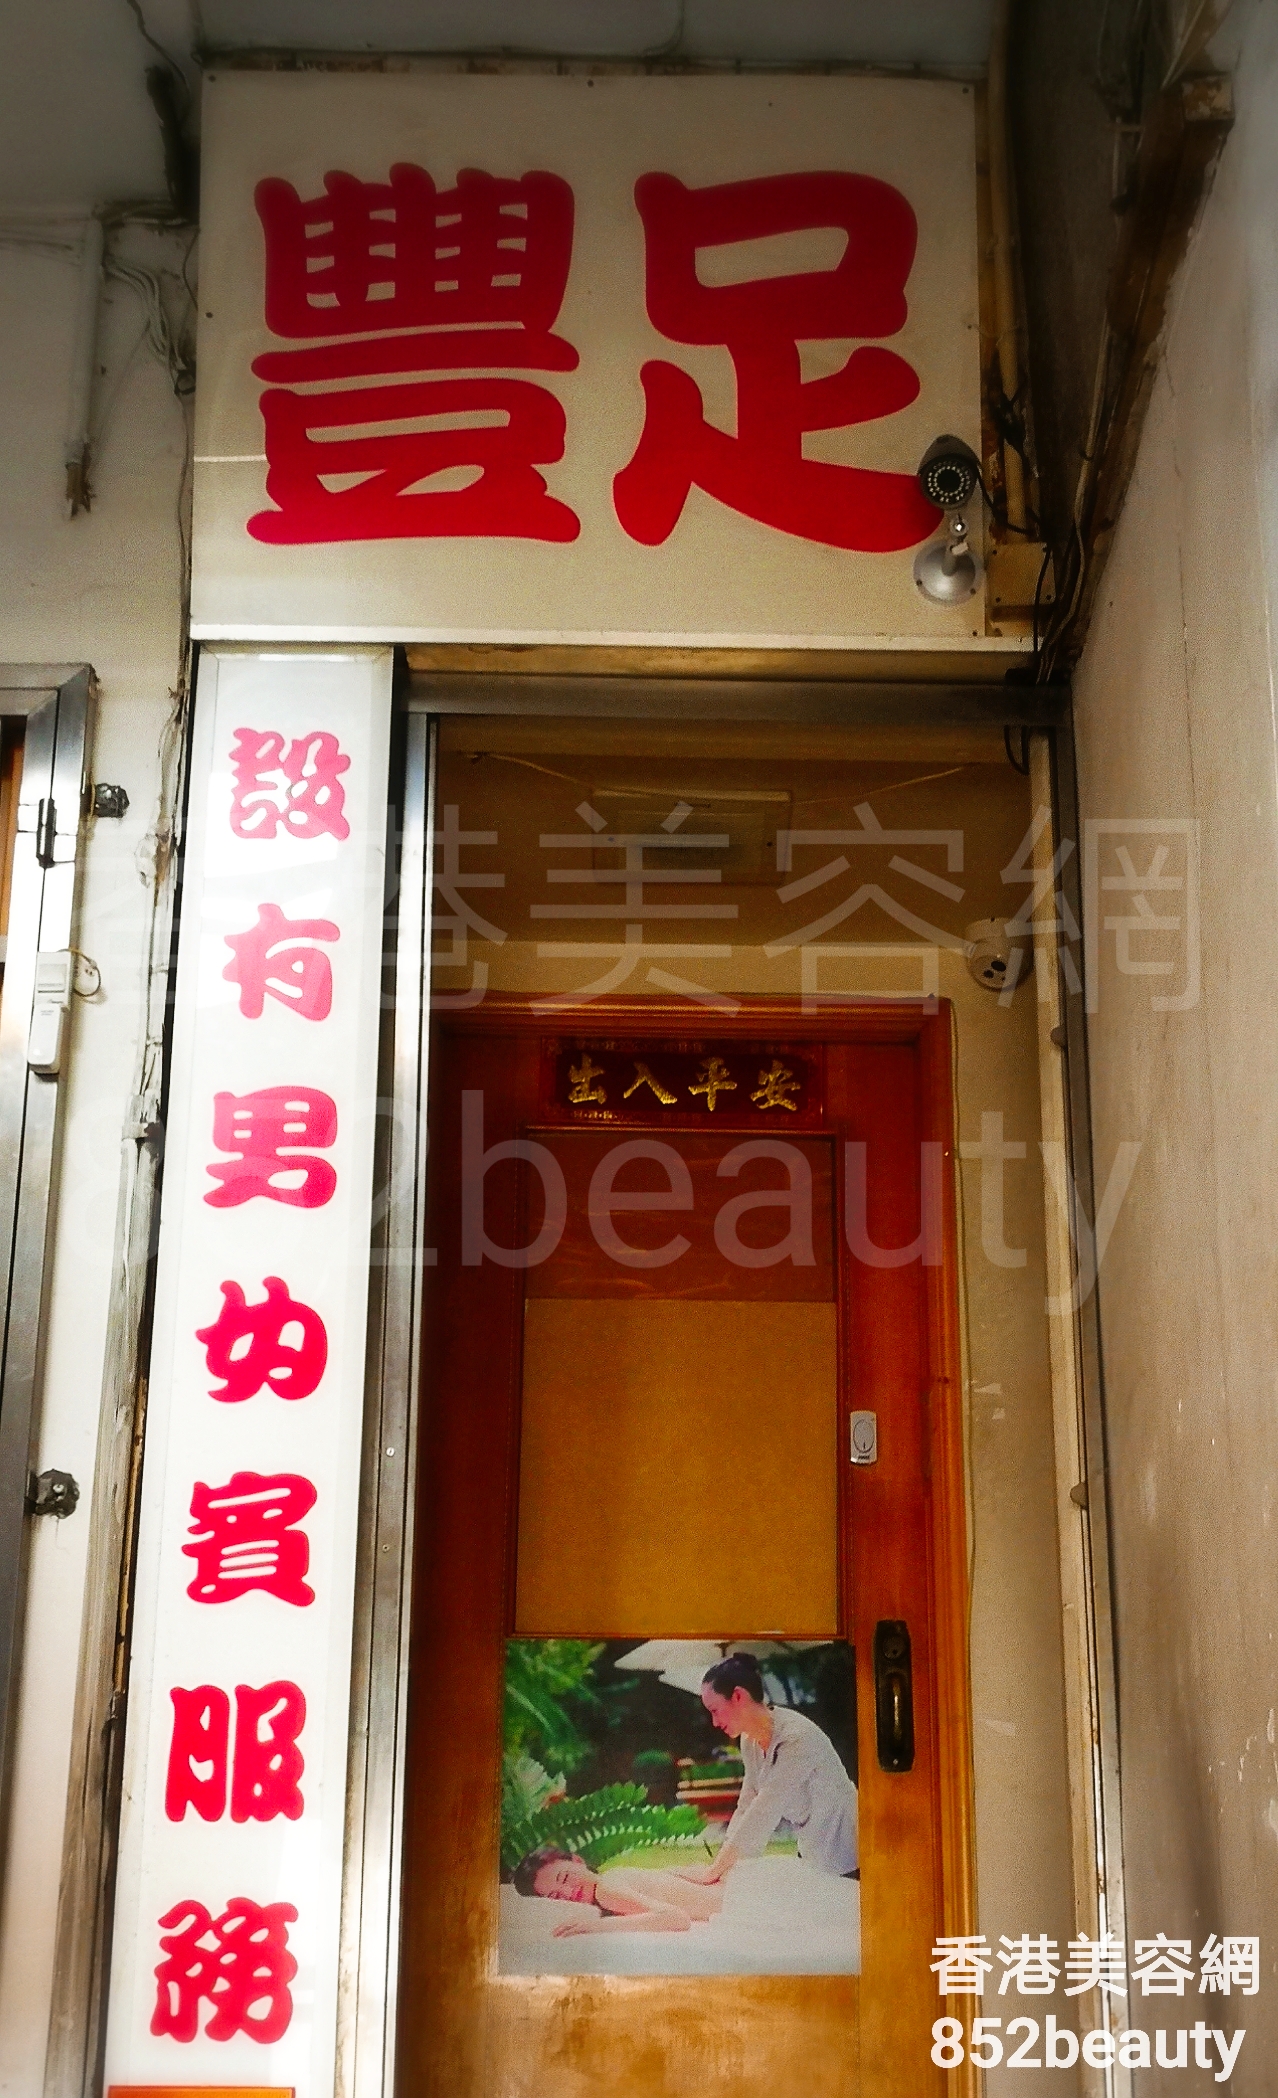 香港美容網 Hong Kong Beauty Salon 美容院 / 美容師: 豐足